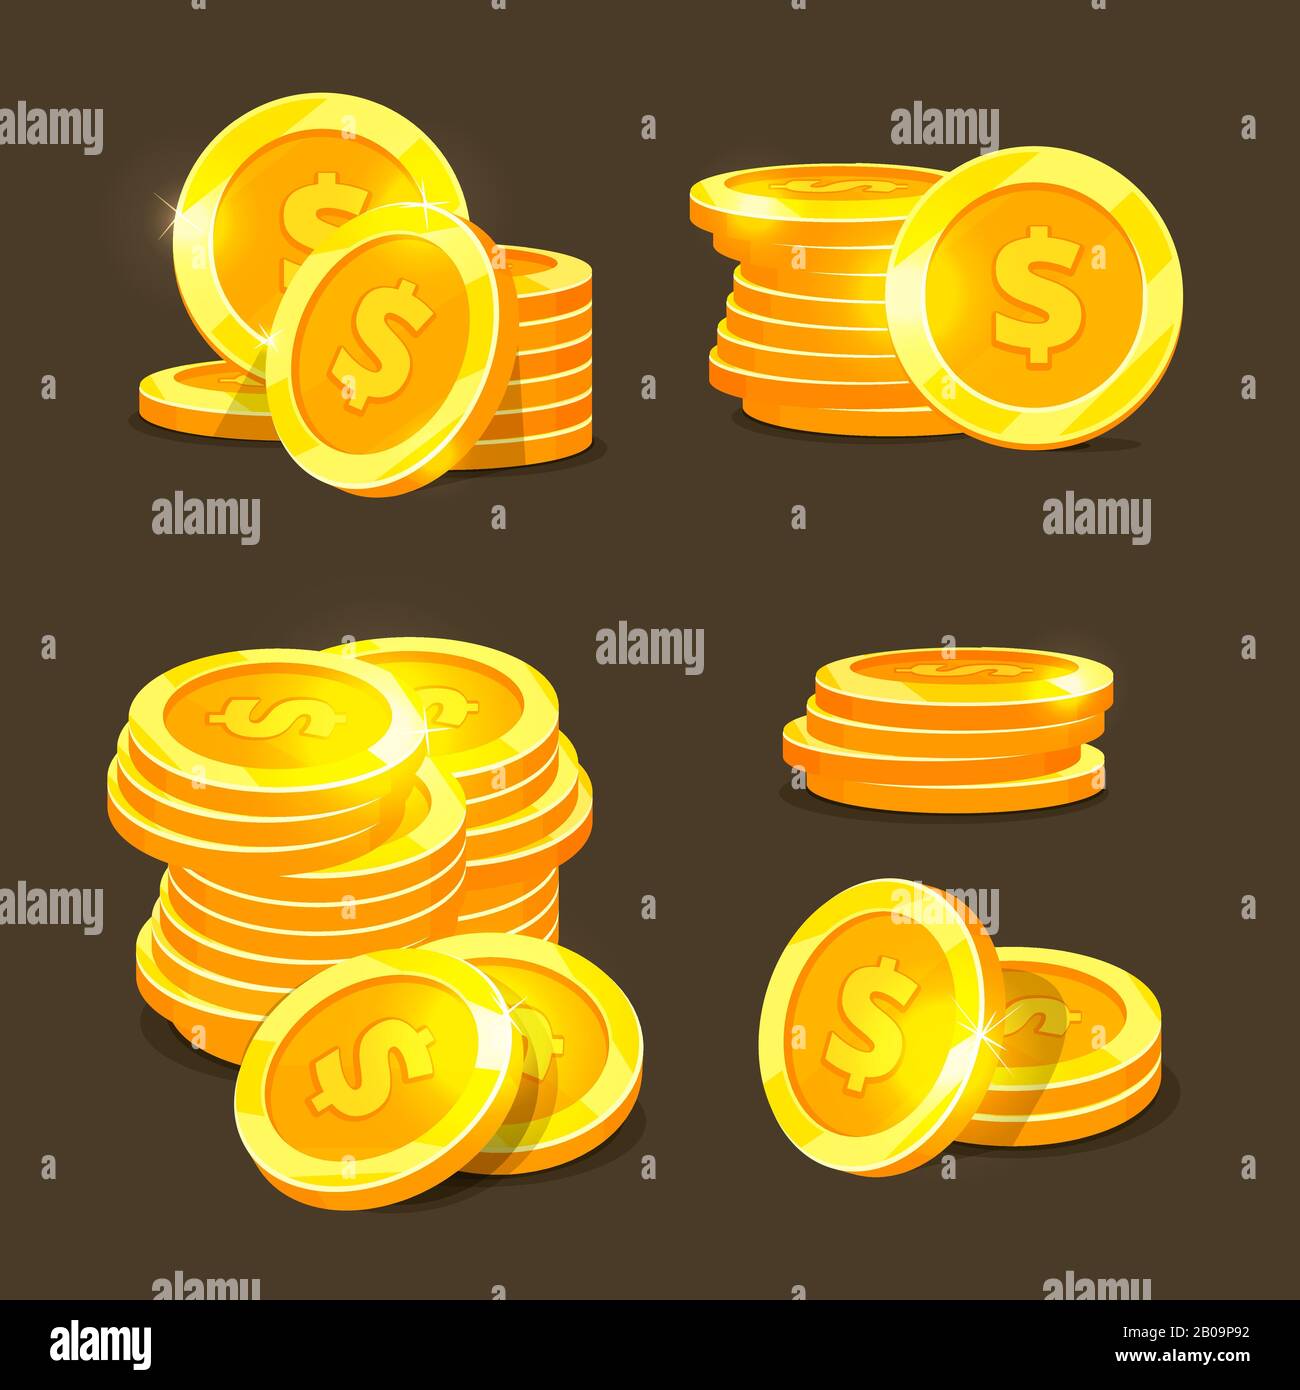 Monete d'oro icone vettoriali, pile di monete d'oro e cumuli. Illustrazione delle monete finanziarie dollaro Illustrazione Vettoriale